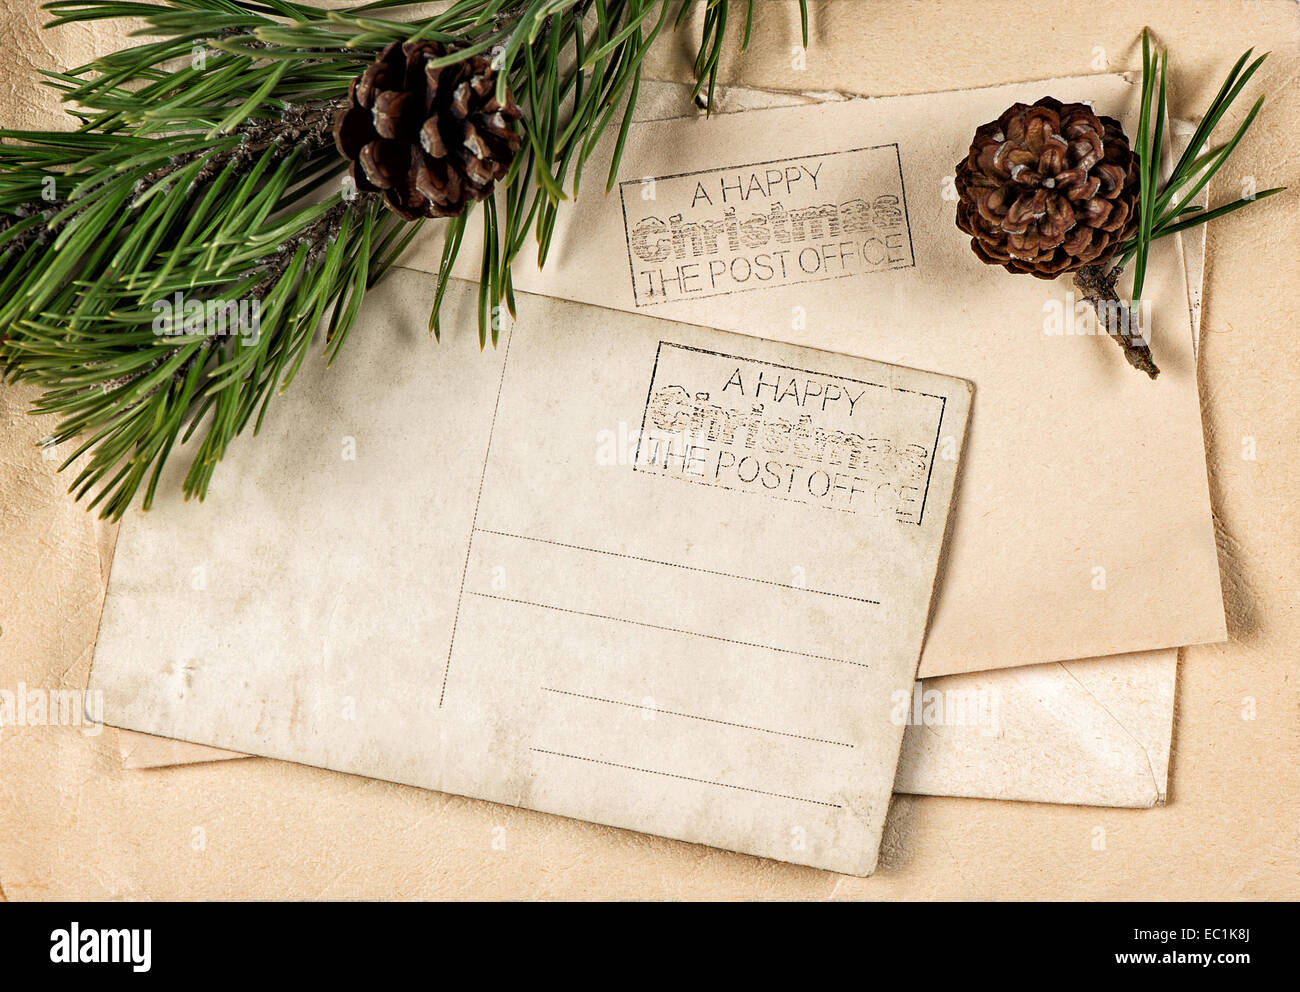 Weihnachten-Ansichtskarte mit Kiefer Baum Zweig Dekoration Stockfoto